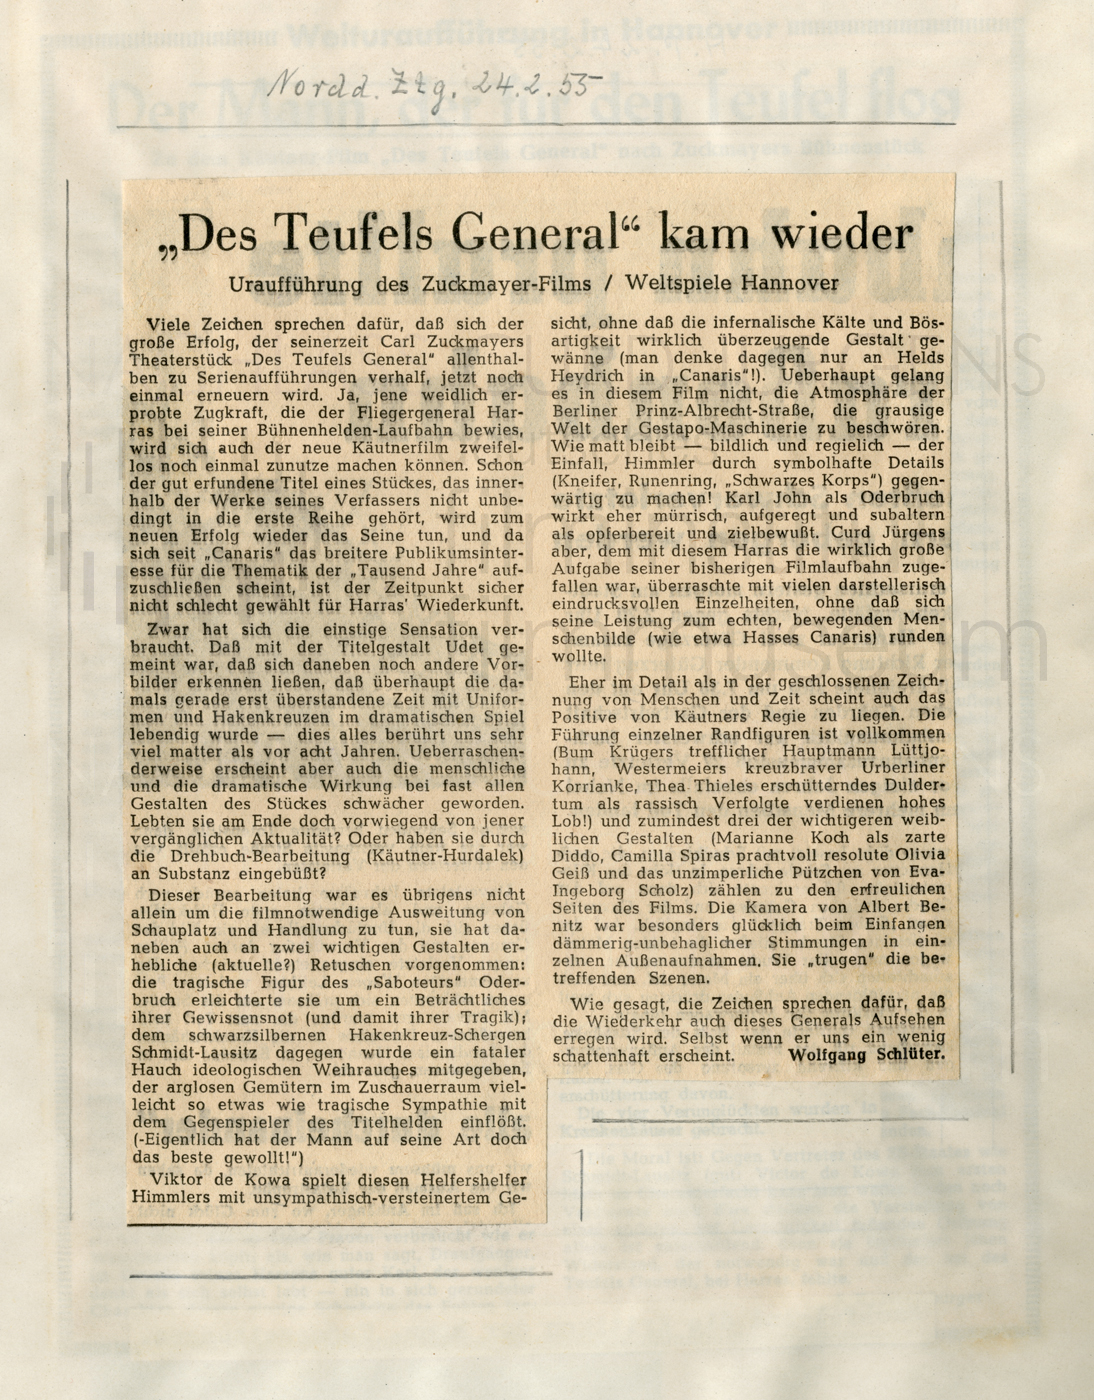 DES TEUFELS GENERAL (1955) Norddeutsche Zeitung:"'Des Teufels General' kam wieder", 24.2.1955